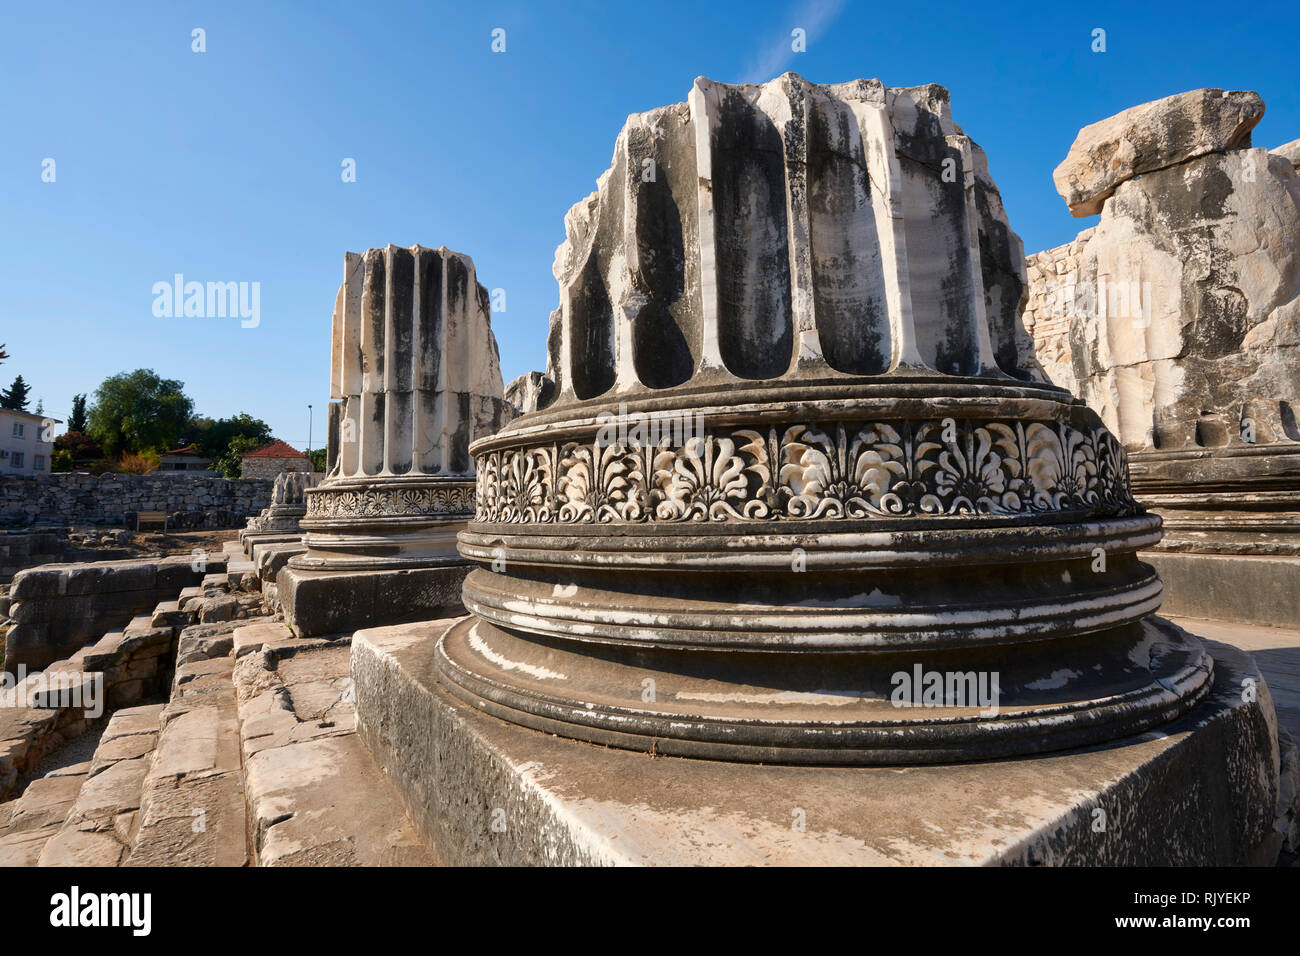 Immagine del freize attorno ad una base a colonna delle rovine dell' Antica Grecia Ionica Didyma Tempio di Apollo e home per l'oracolo di Apollo. Anche kno Foto Stock